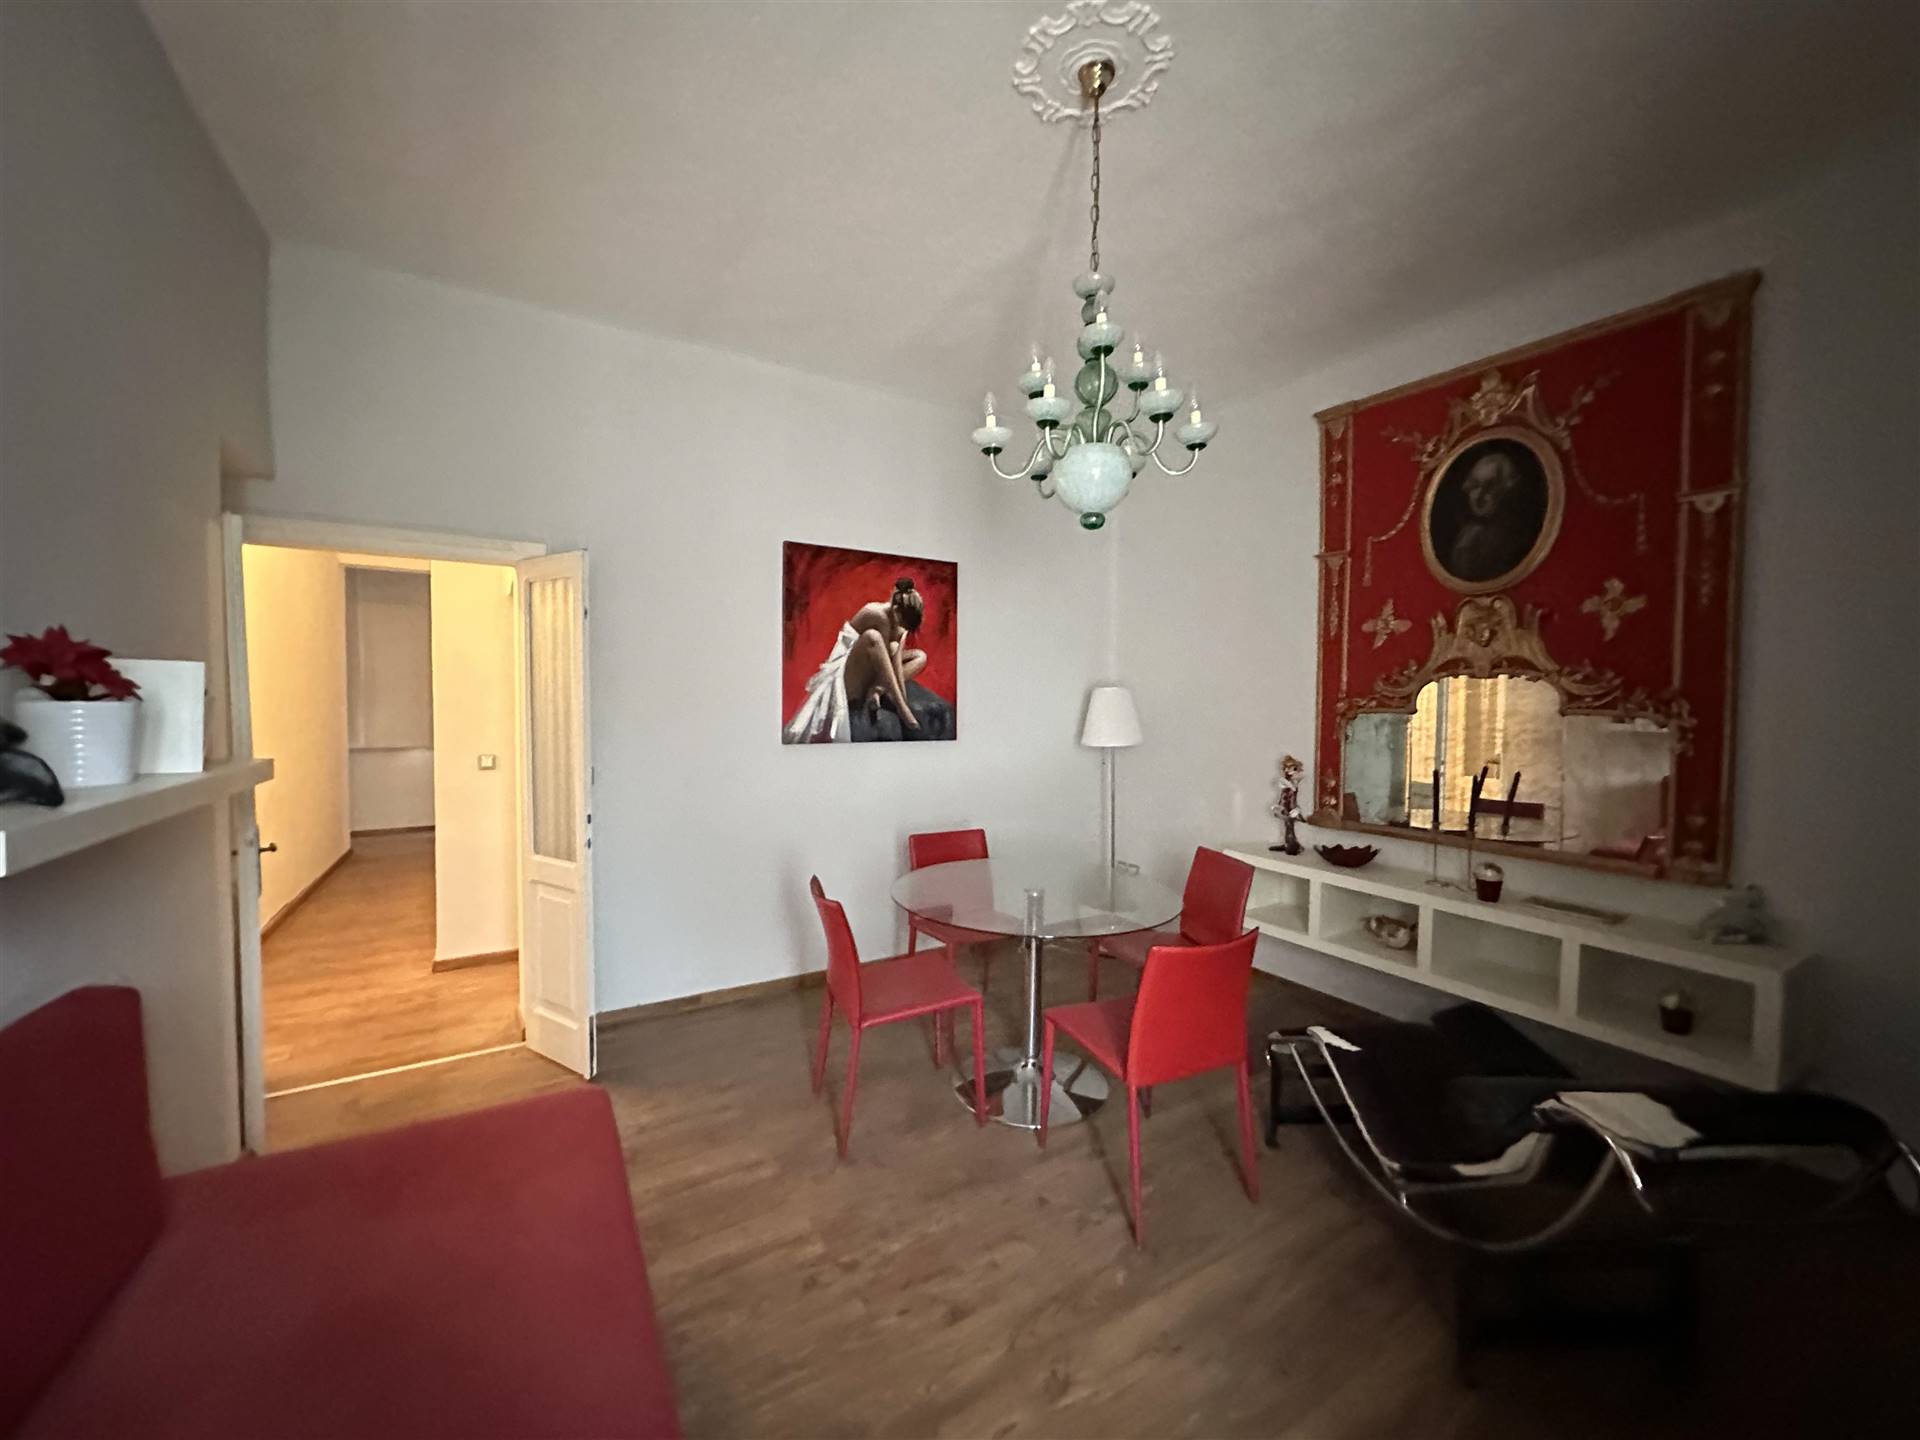 Appartamento in vendita a Fiorenzuola d'Arda, 3 locali, prezzo € 60.000 | PortaleAgenzieImmobiliari.it